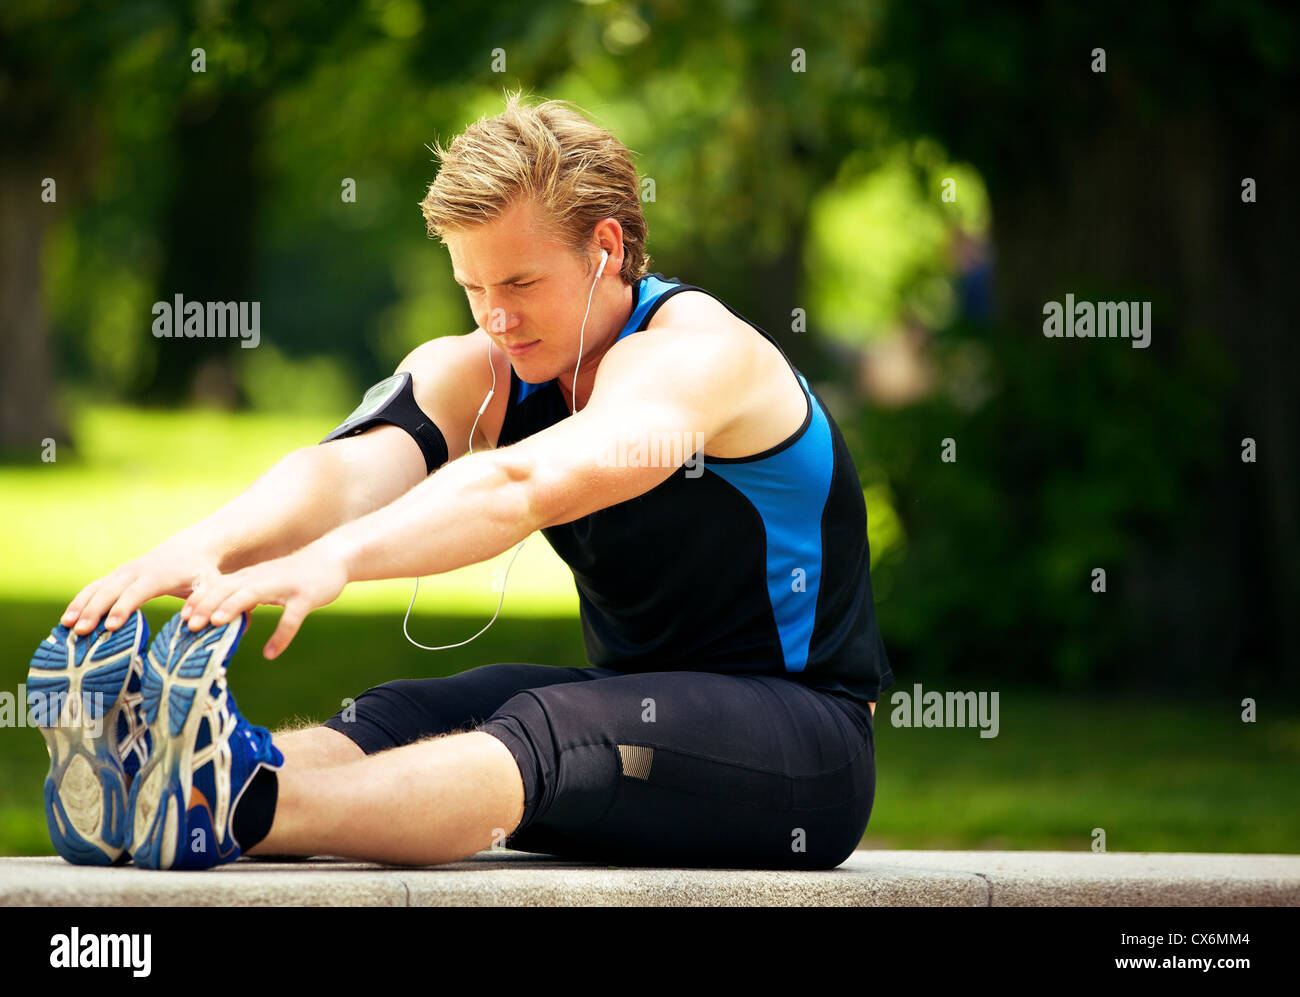 Attraktive Athlet seine stretching-Übung zu tun Stockfoto